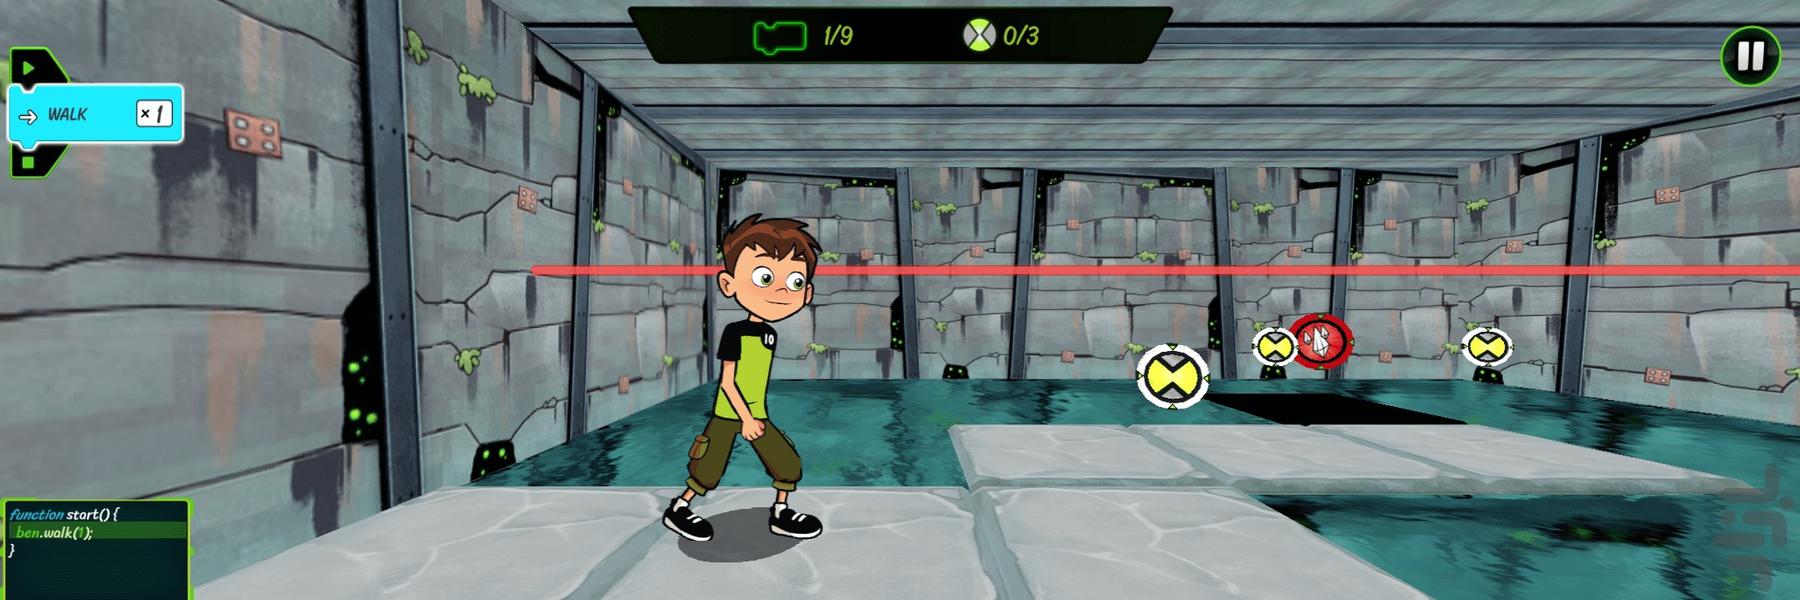 بازی بن تن ماجراجو - Gameplay image of android game